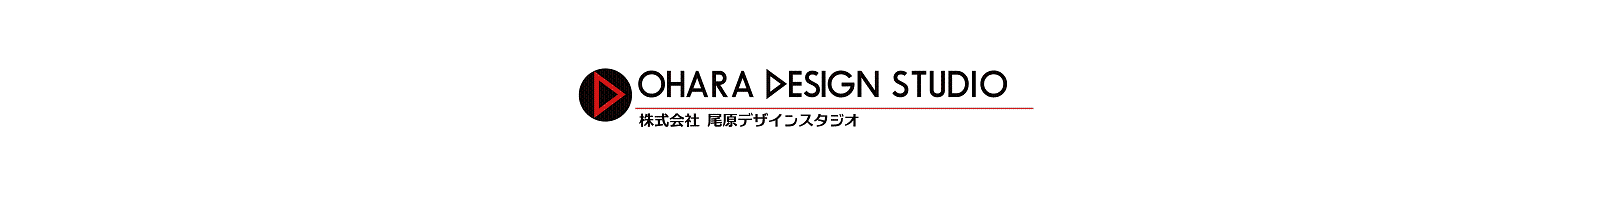 OHARA DESIGN STUDIO